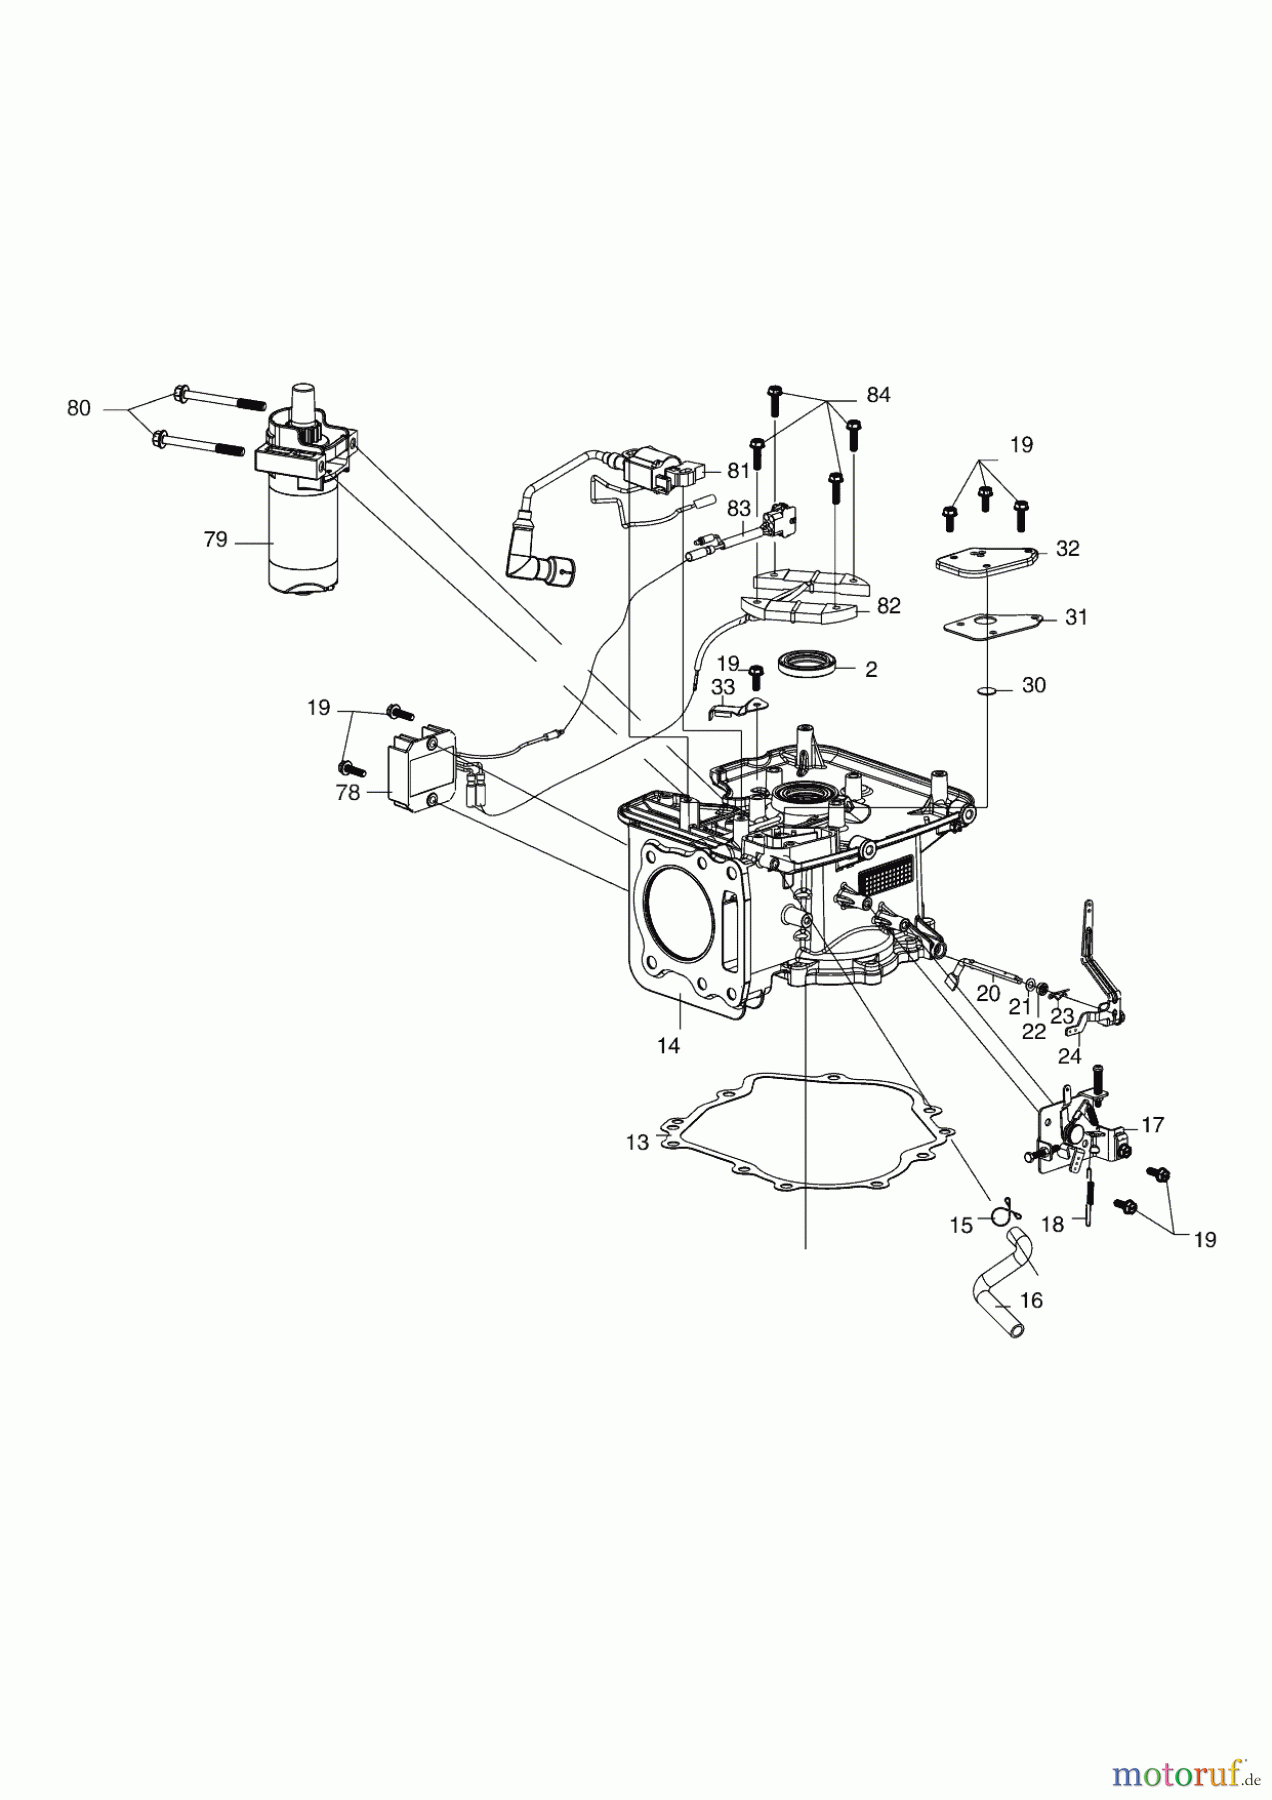  AL-KO Gartentechnik Benzinmotoren BENZIN MOTOR LC1P85FA PRO350 352 CC  04/2018 Seite 2